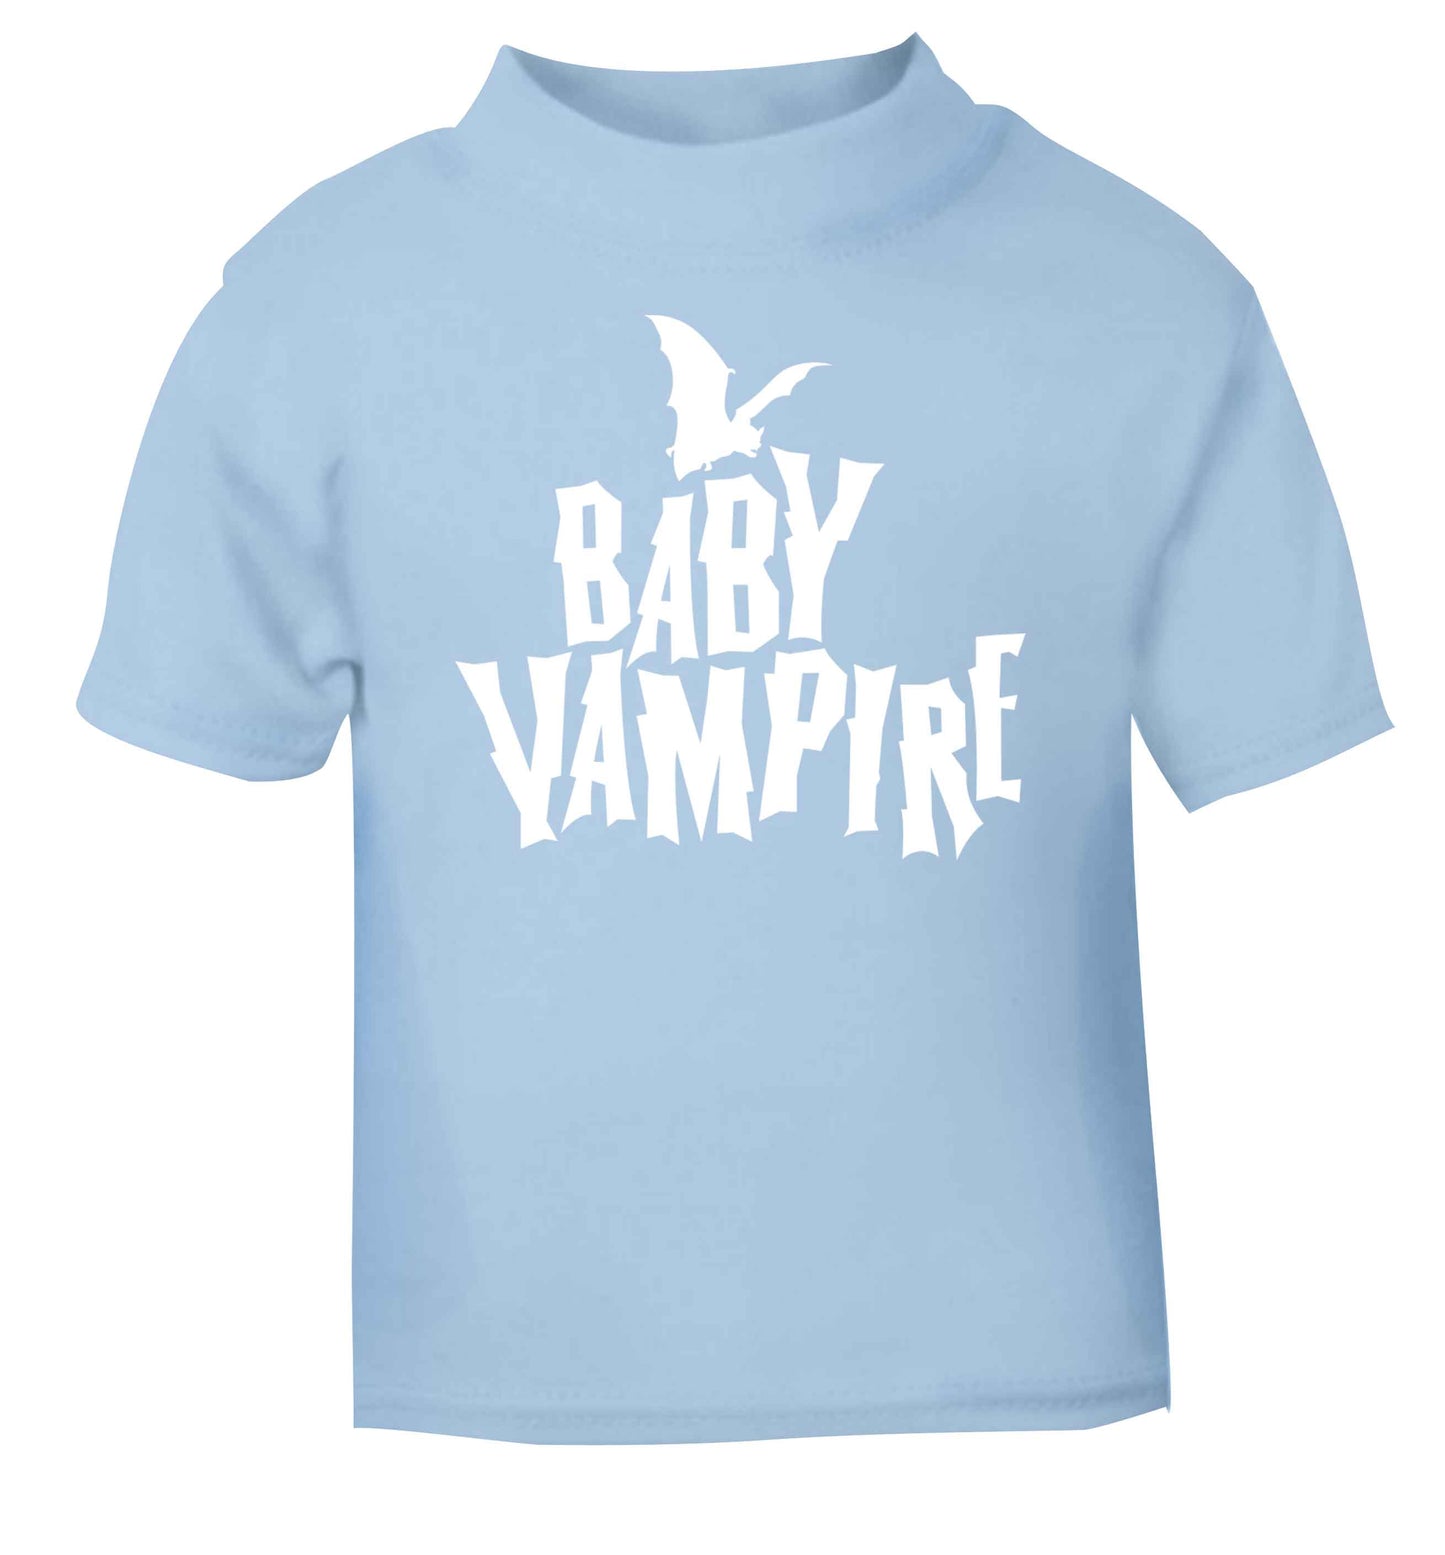 Baby vampire light blue baby toddler Tshirt 2 Years